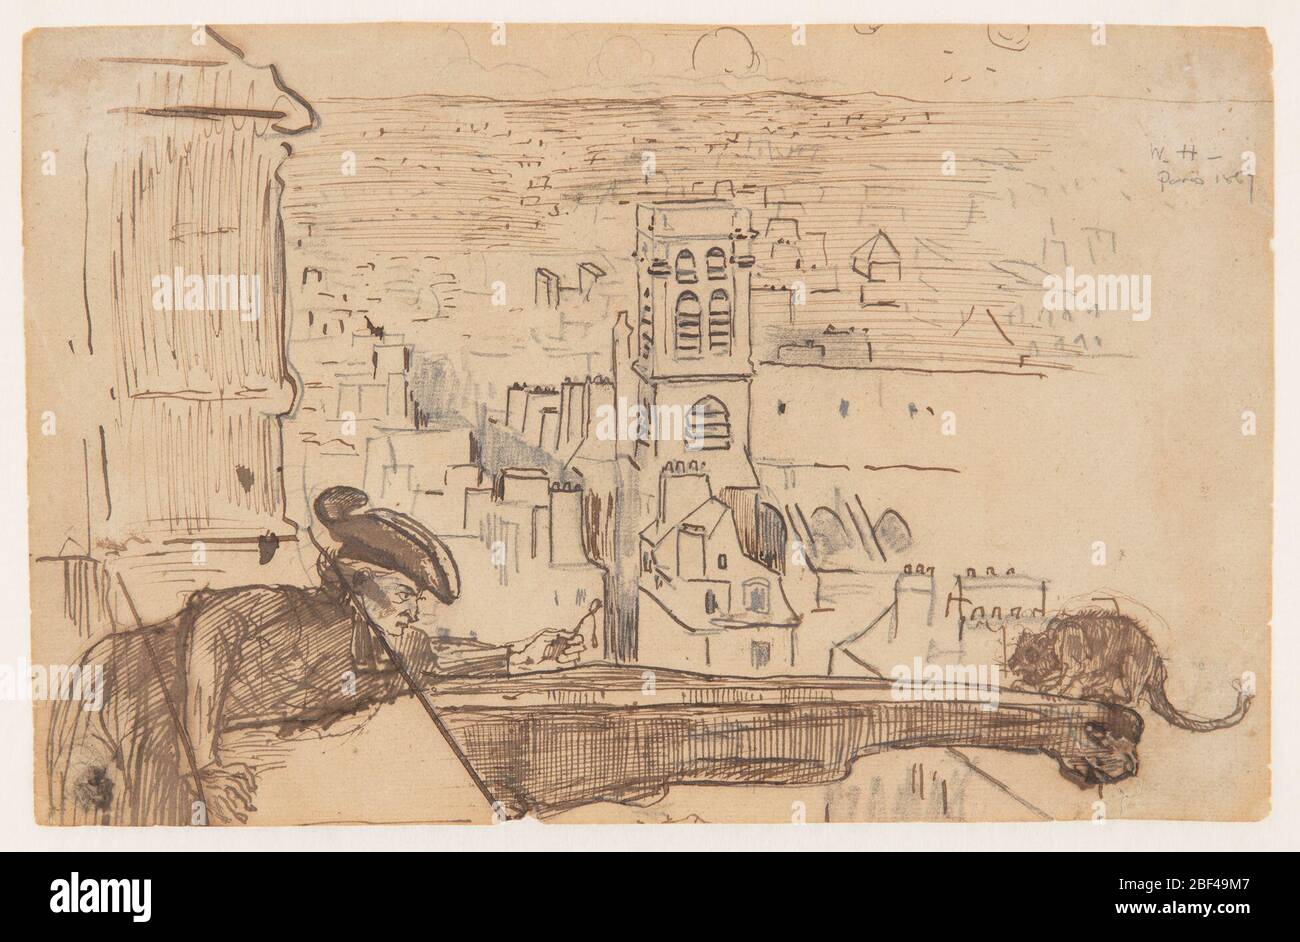 Blick auf Paris mit einer Brüstung des Doms Notre Dame. Horizontaler Blick über Paris von einer Brüstung des Turms der Kathedrale Notre Dame im Vordergrund, wo ein Mann einen Querlenker aushält, um eine Katze zu locken, die am äußersten äußeren Ende eines Wasserspeiers hockt. Stockfoto